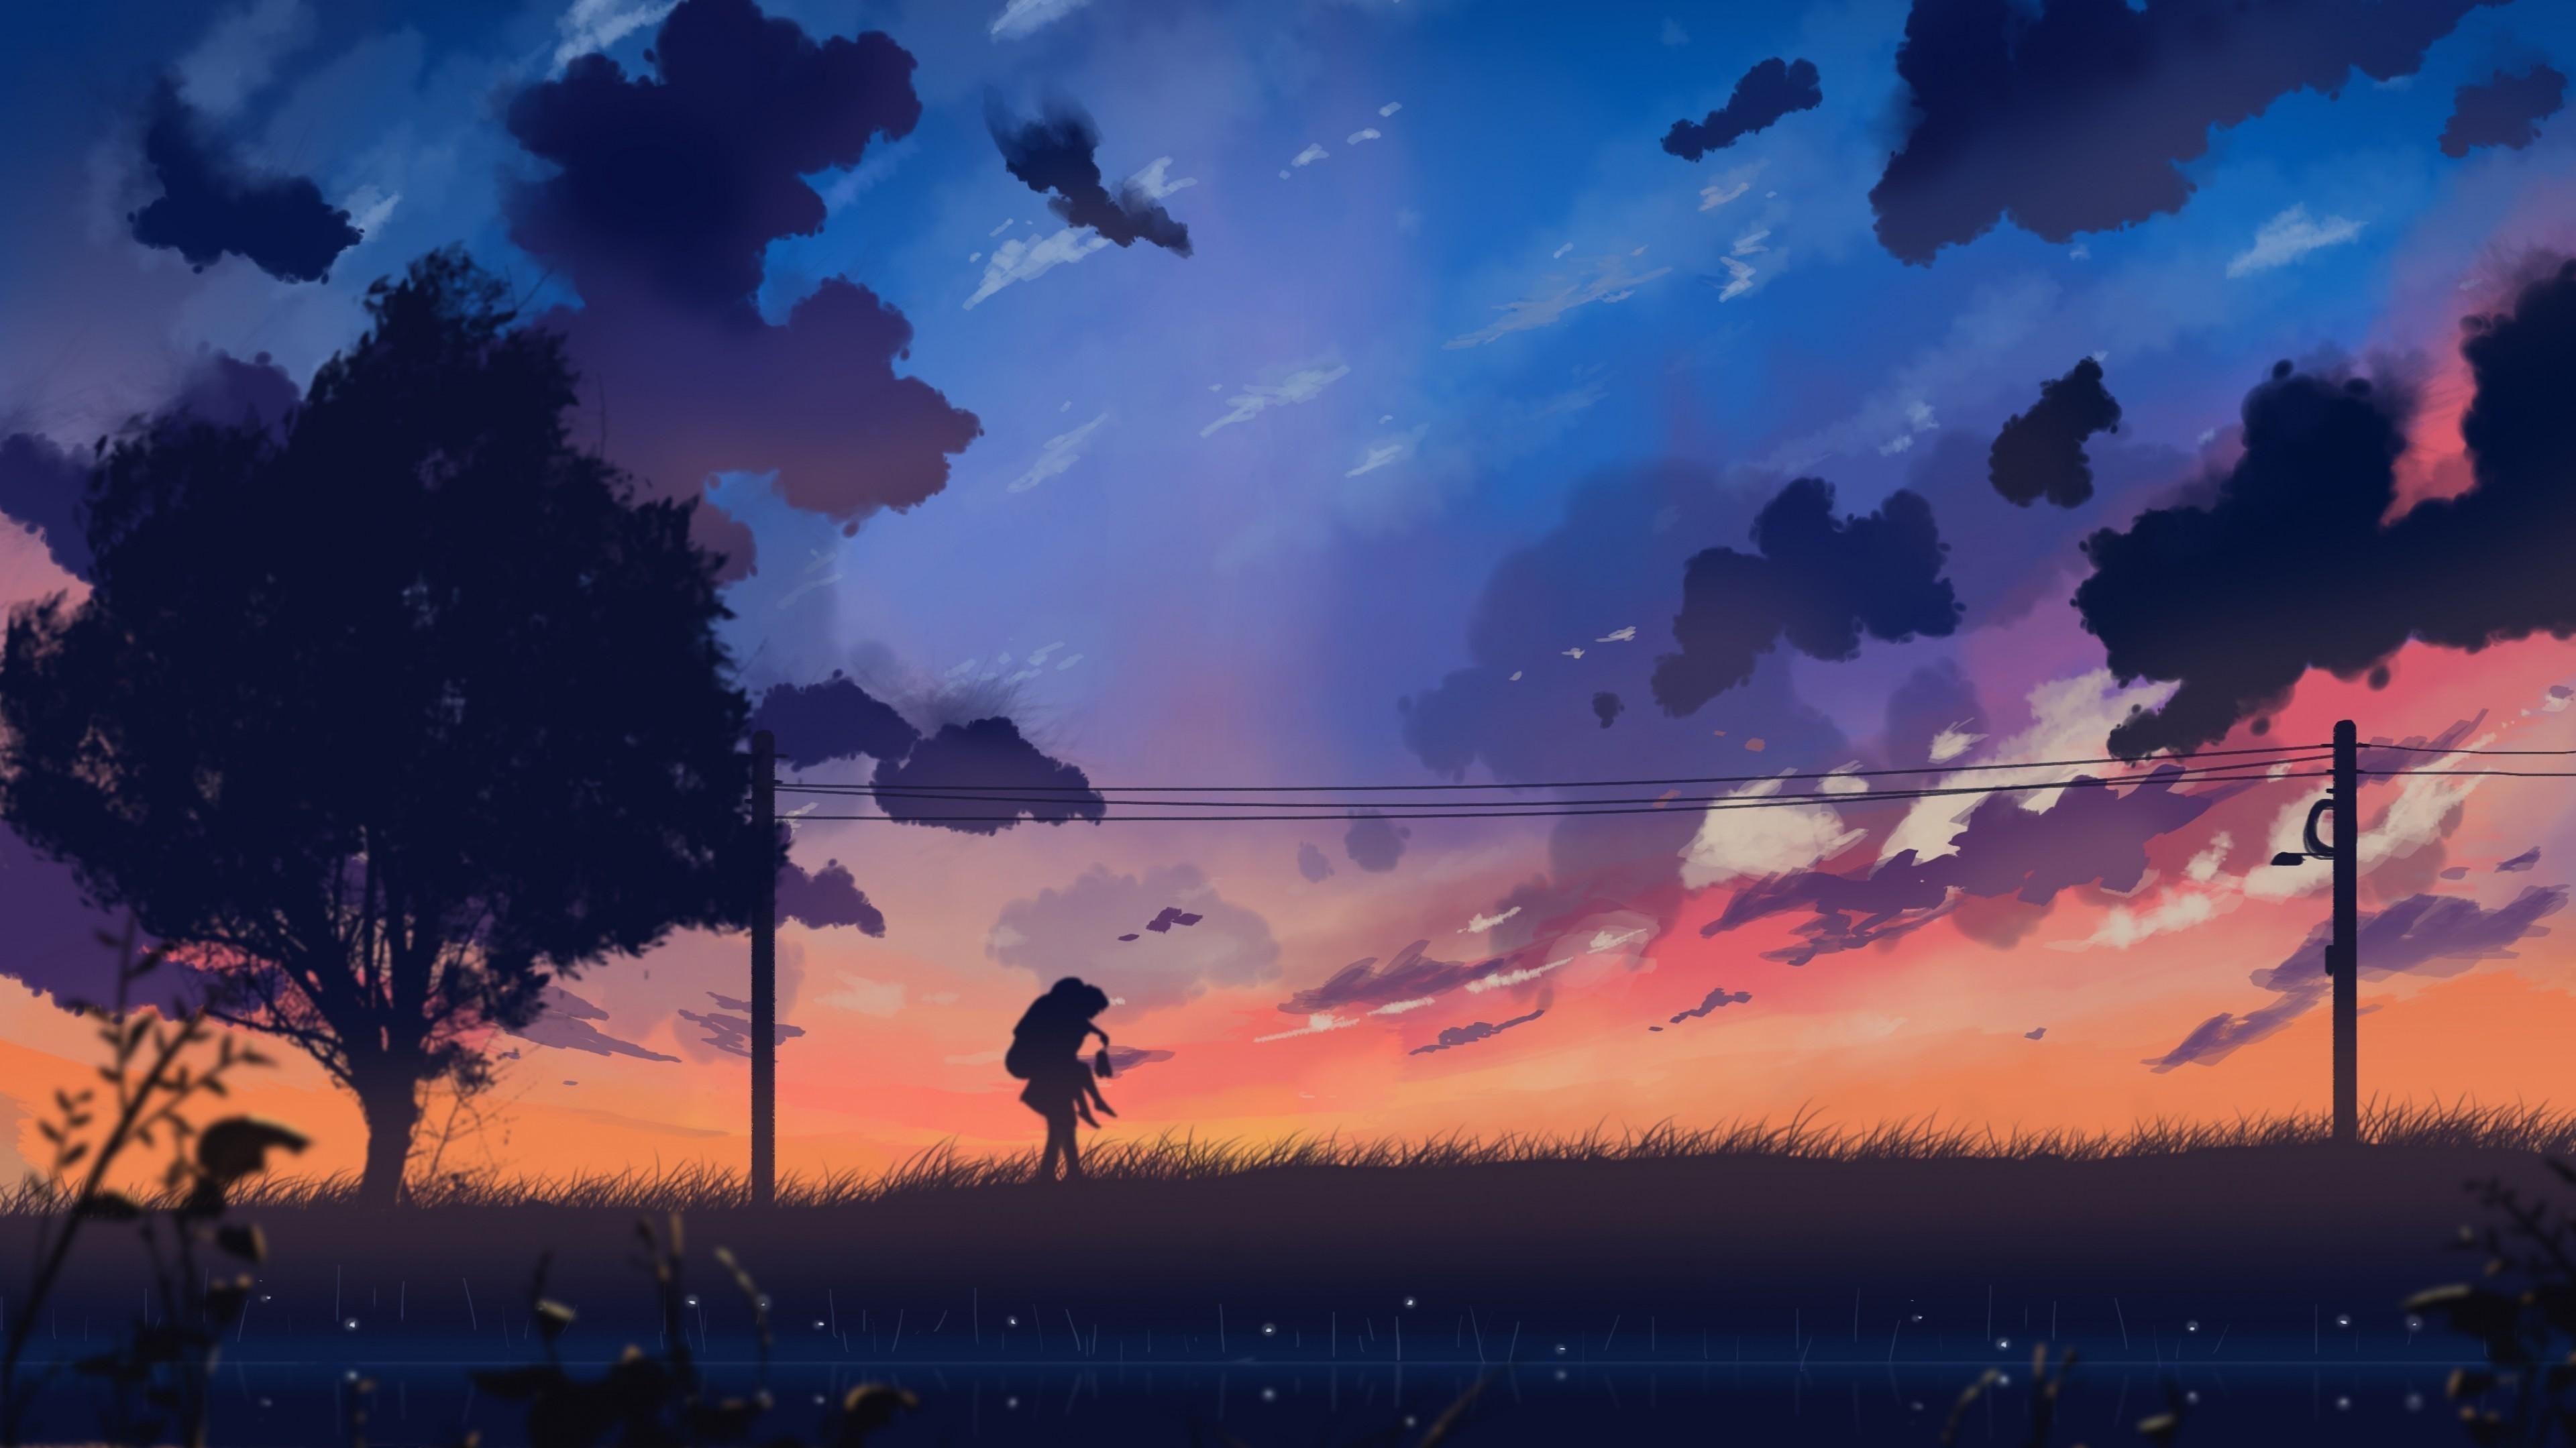 Aesthetic Anime Landscape Wallpaper C09